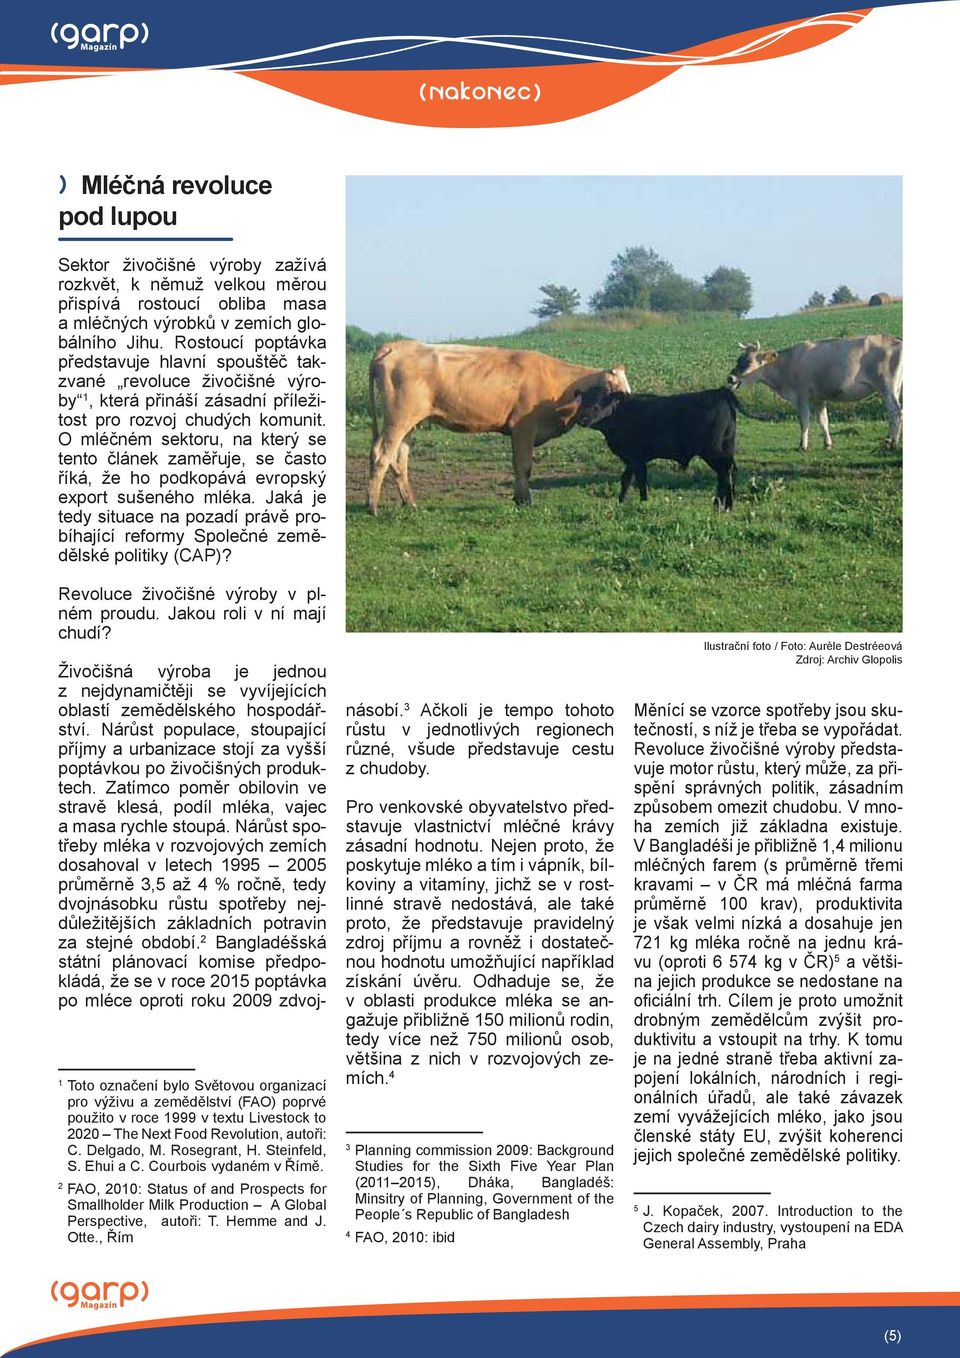 O mléčném sektoru, na který se tento článek zaměřuje, se často říká, že ho podkopává evropský export sušeného mléka.